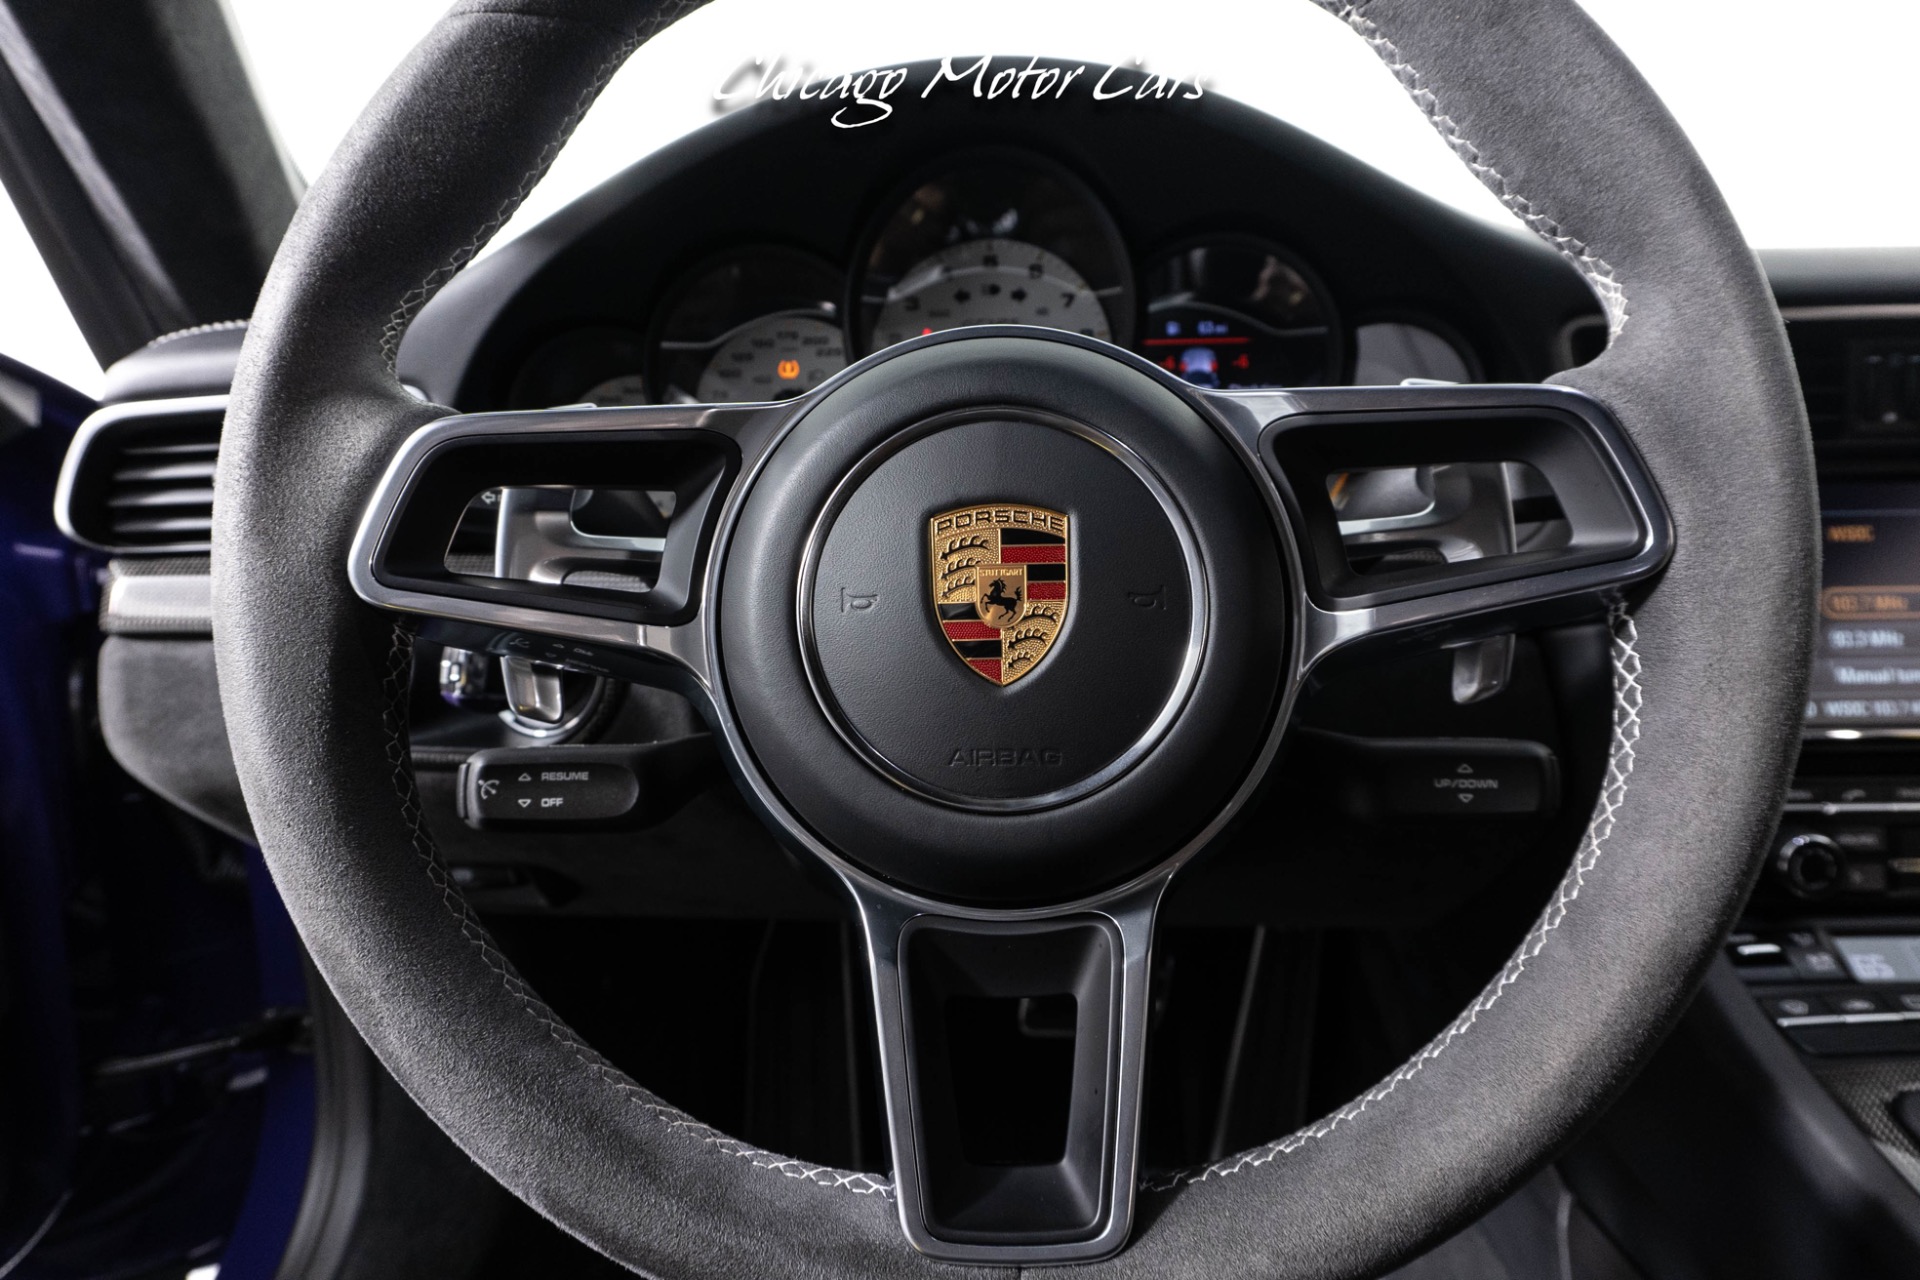 Used-2016-Porsche-911-GT3-RS-Rare-Ultraviolet-Paint-Front-End-Lift-JCR-Developments-Racing-Exhaust